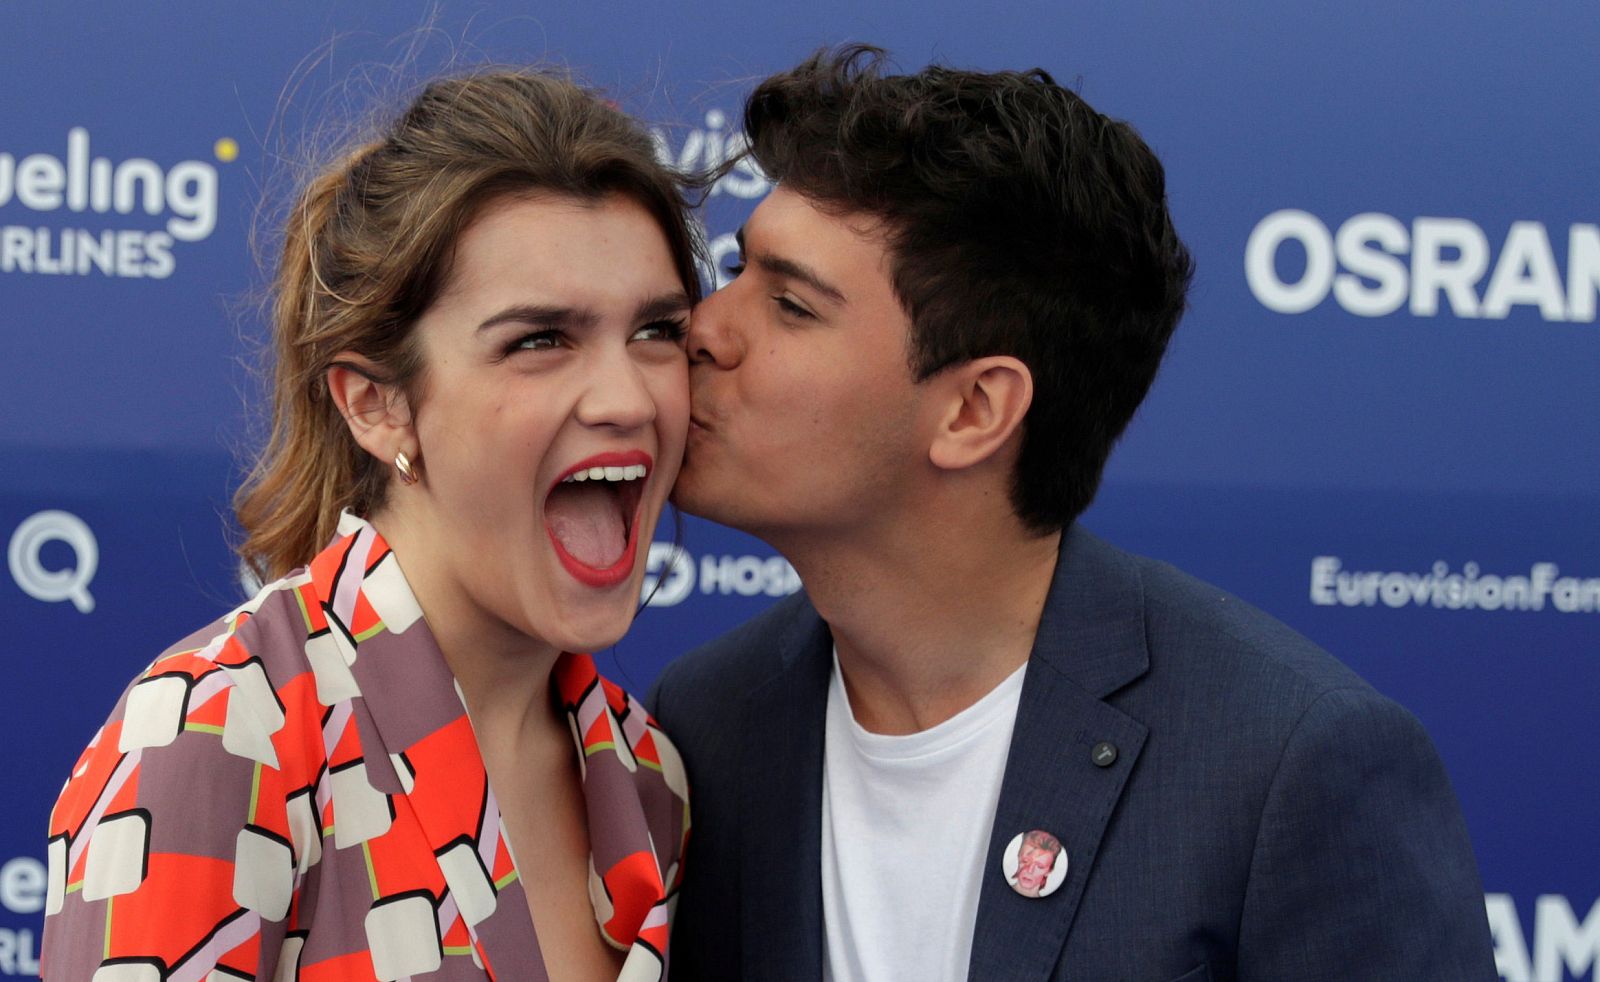 Eurovisión 2018 - Almaia y Alfred emocionan a Europa con su versión de "Amar pelos dois" 